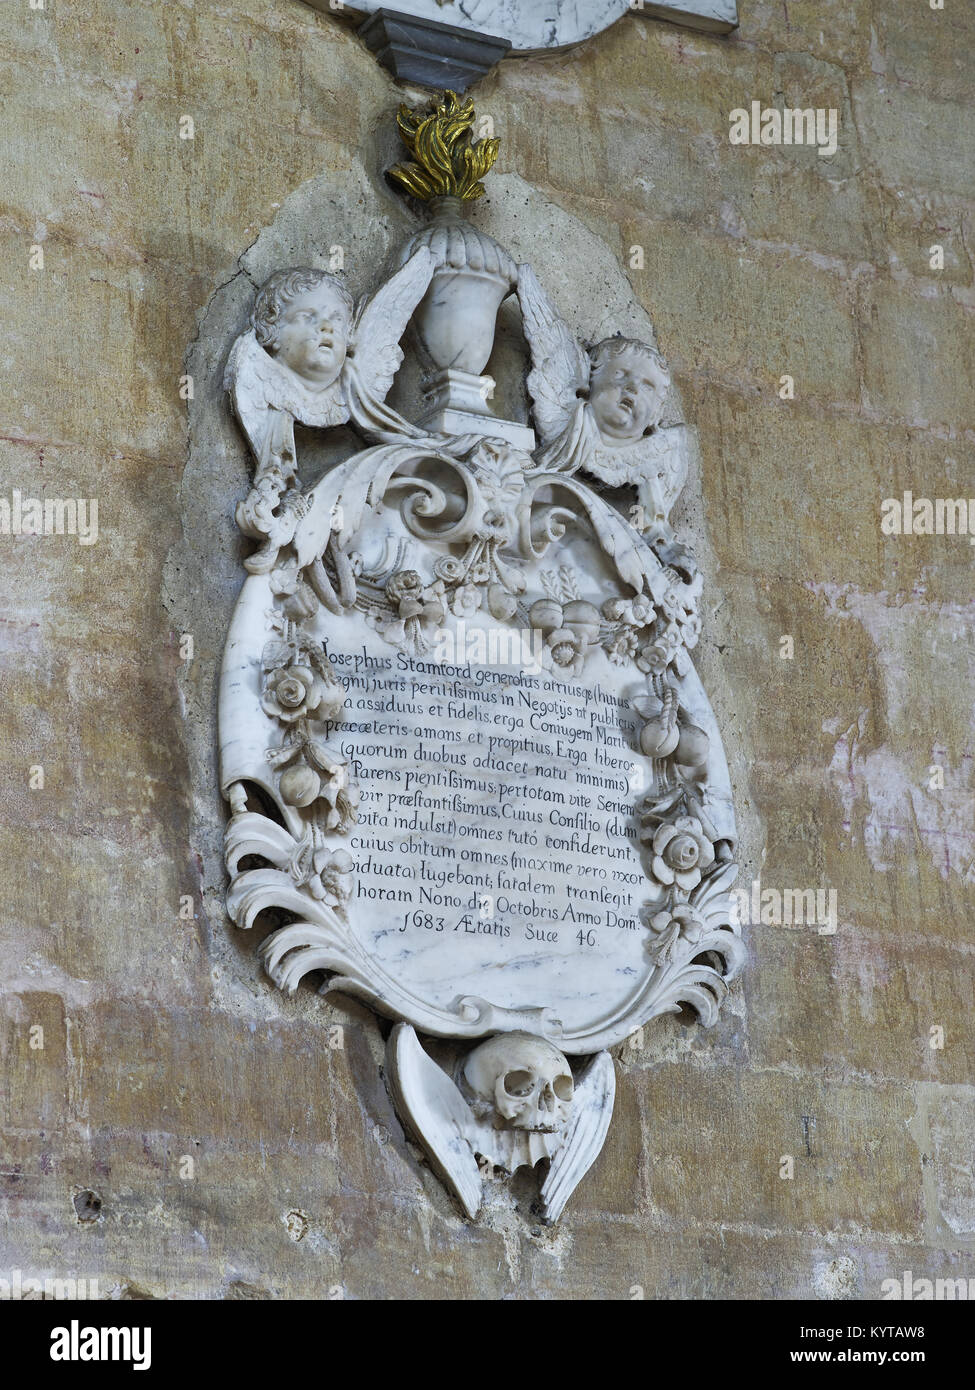 La catedral de Peterborough. Placa conmemorativa en el muro de mármol barroco Joseph Stamford, fecha 1683. Muestra dos querubines supporing una llameante urn, con guirnaldas Foto de stock